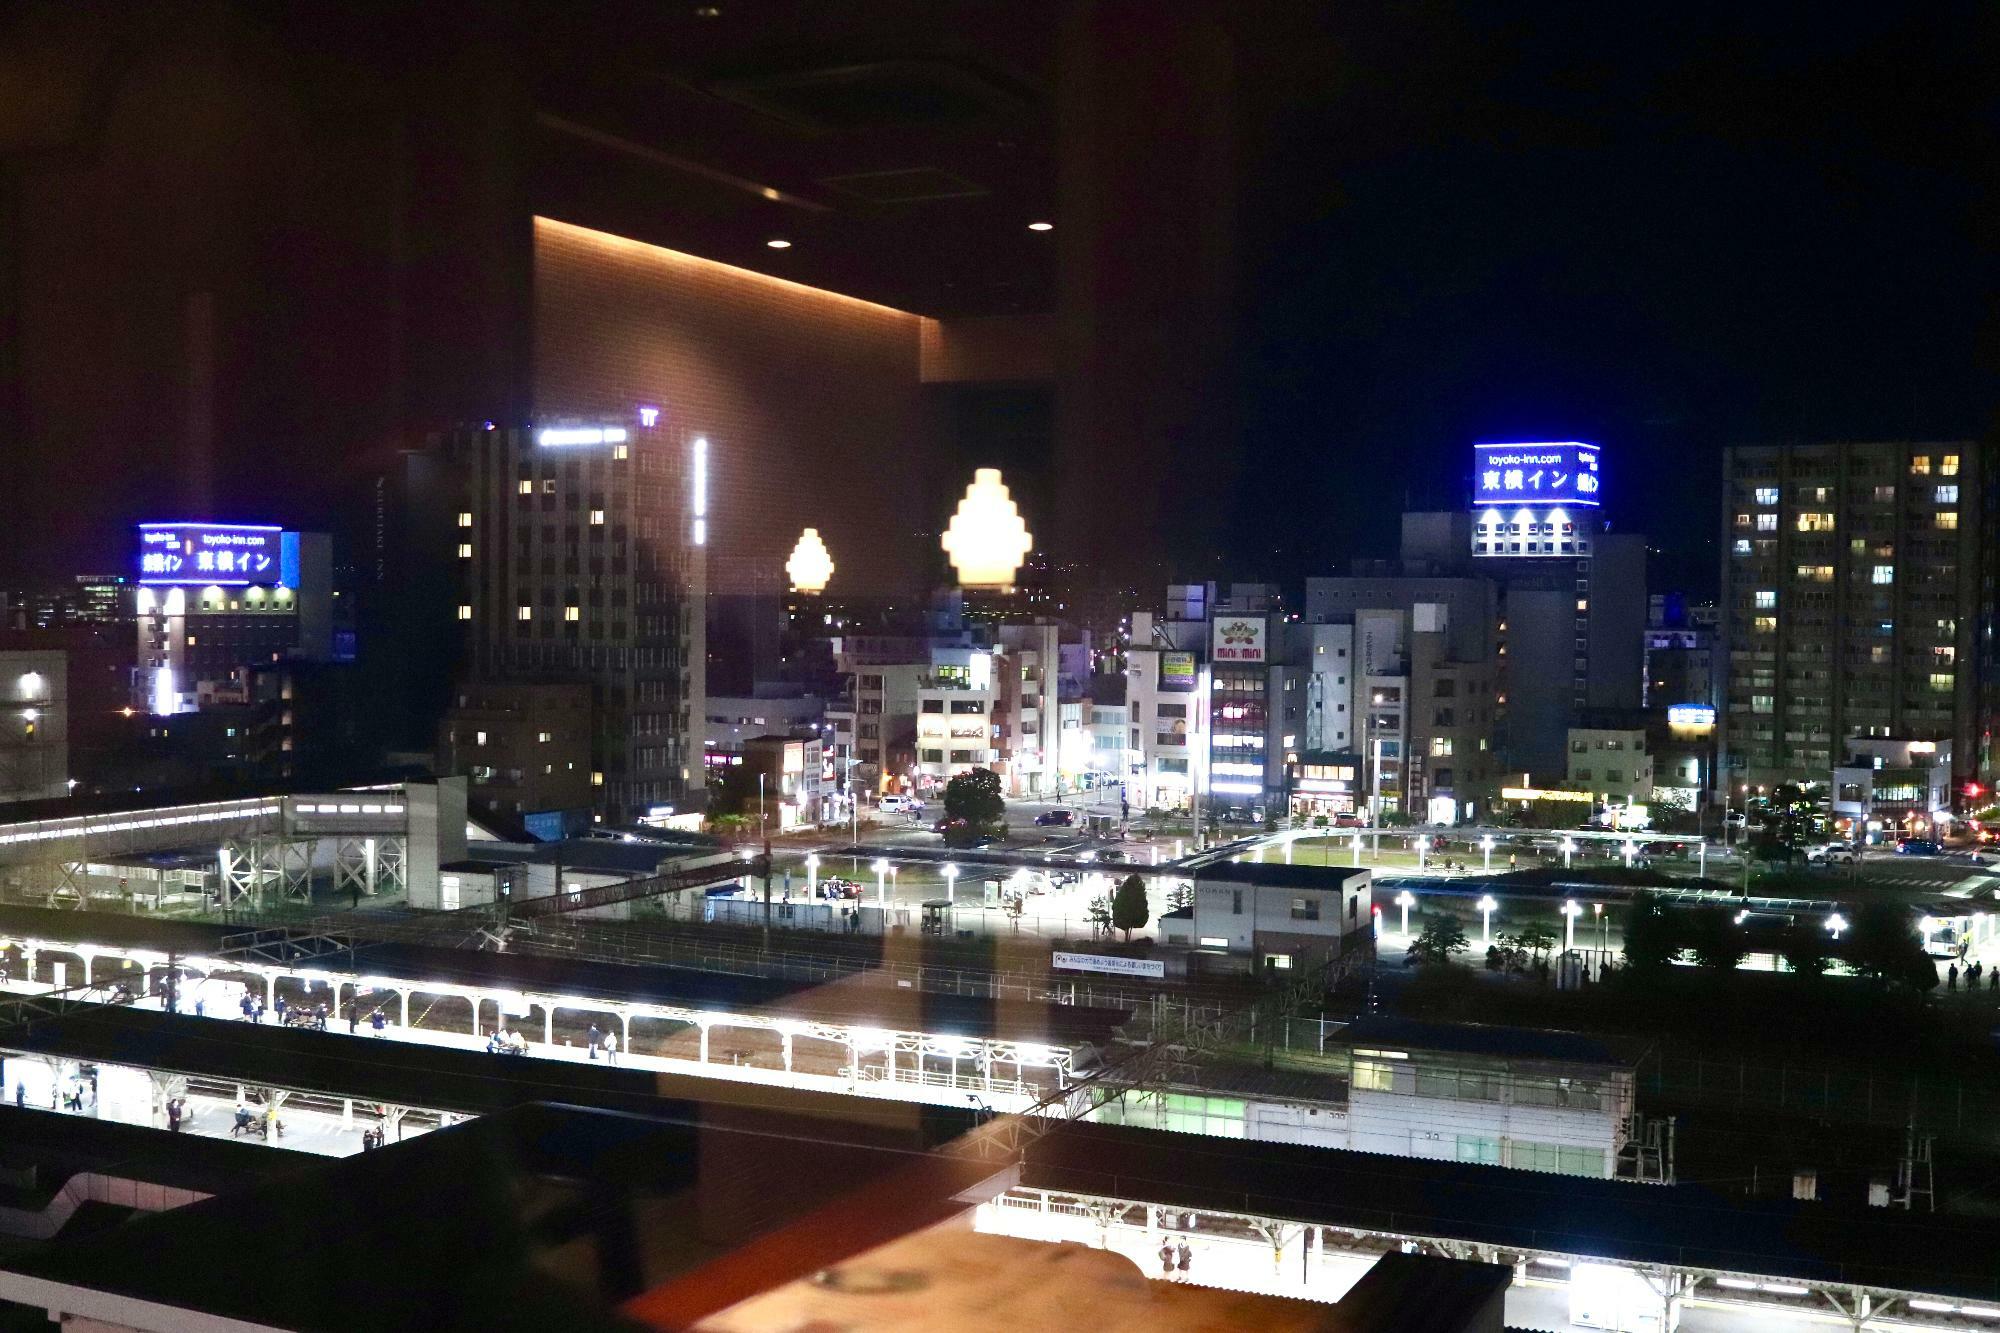 沼津駅北口方面の夜景がよく見えます